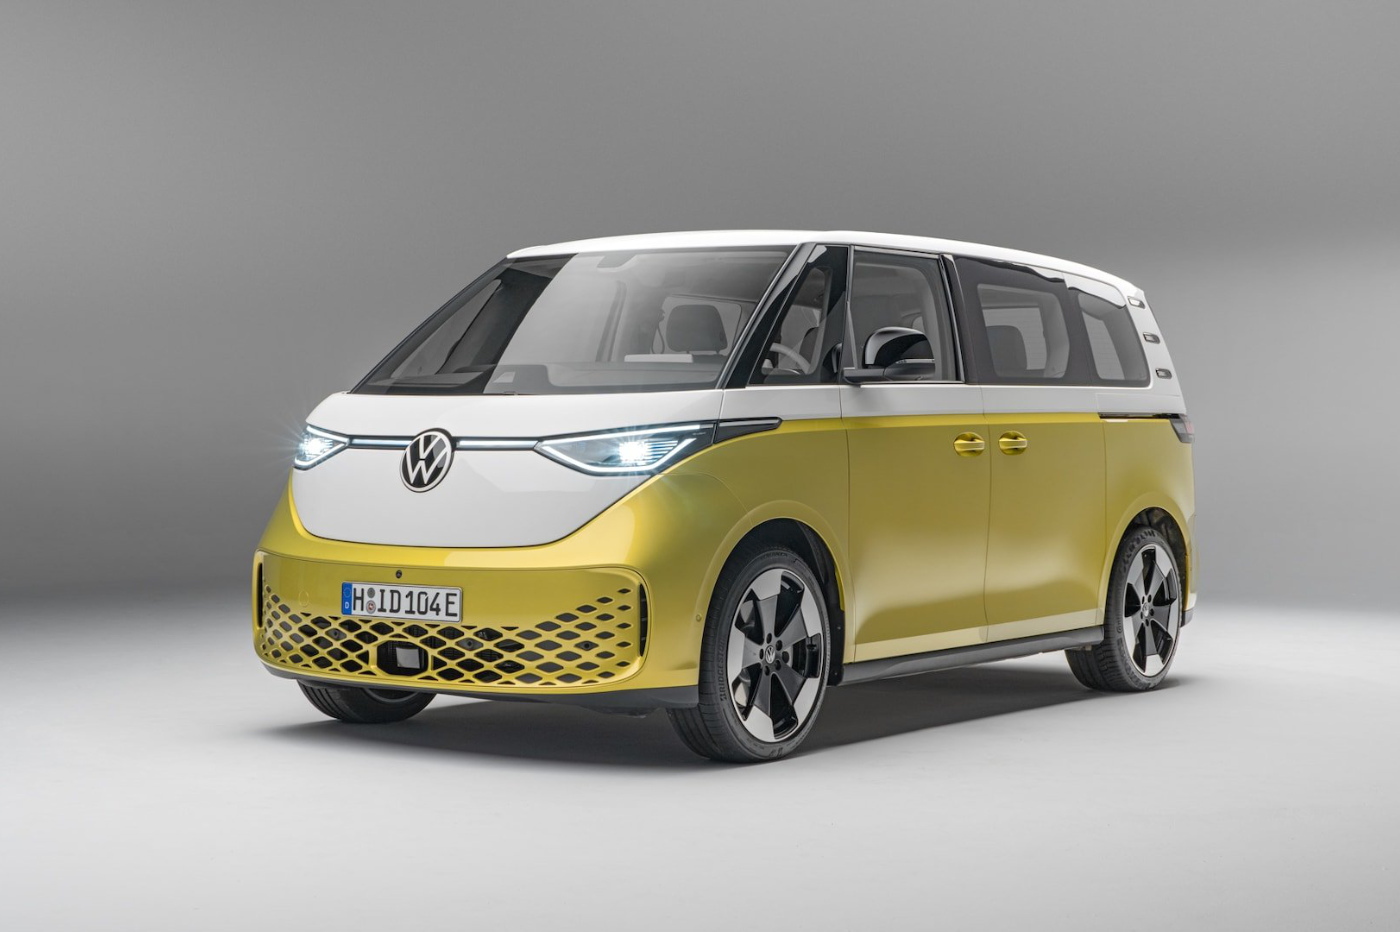 Le mythique Combi VW revient … en version électrique